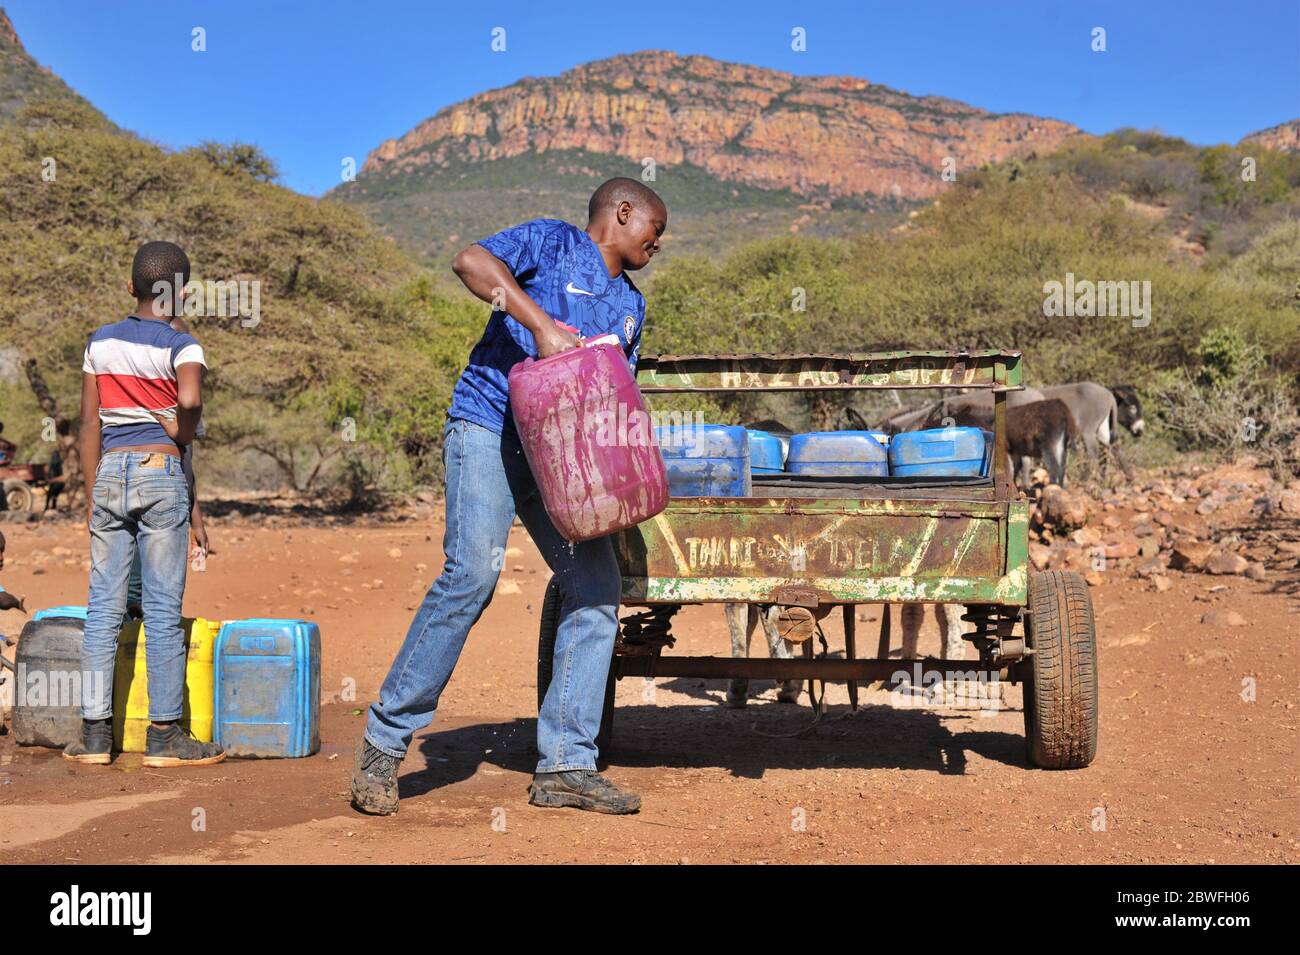 Les villageois de Limpopo collectent toujours l'eau des robinets d'eau communautaires à l'aide de chariots à ânes en raison d'une mauvaise prestation de services. Banque D'Images